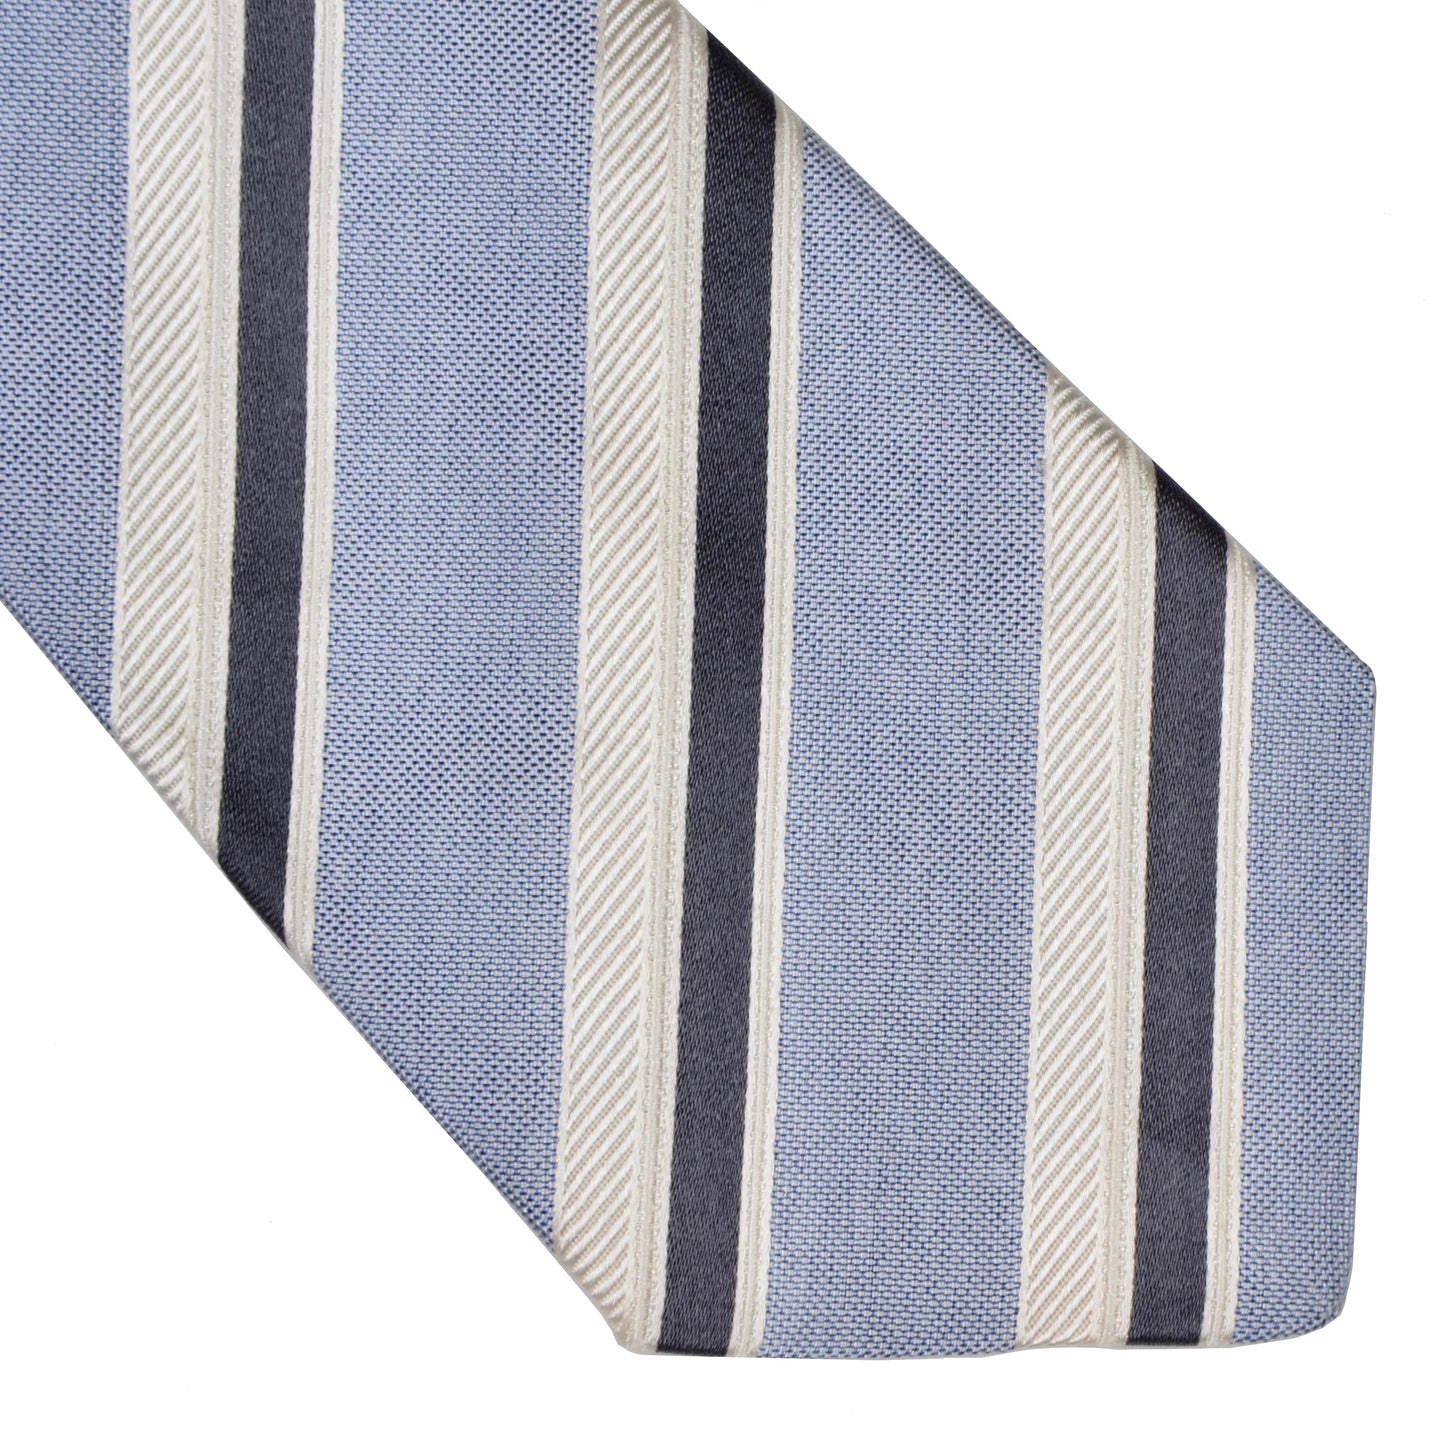 Kiton Napoli 7 Fold Striped Tie - Blue